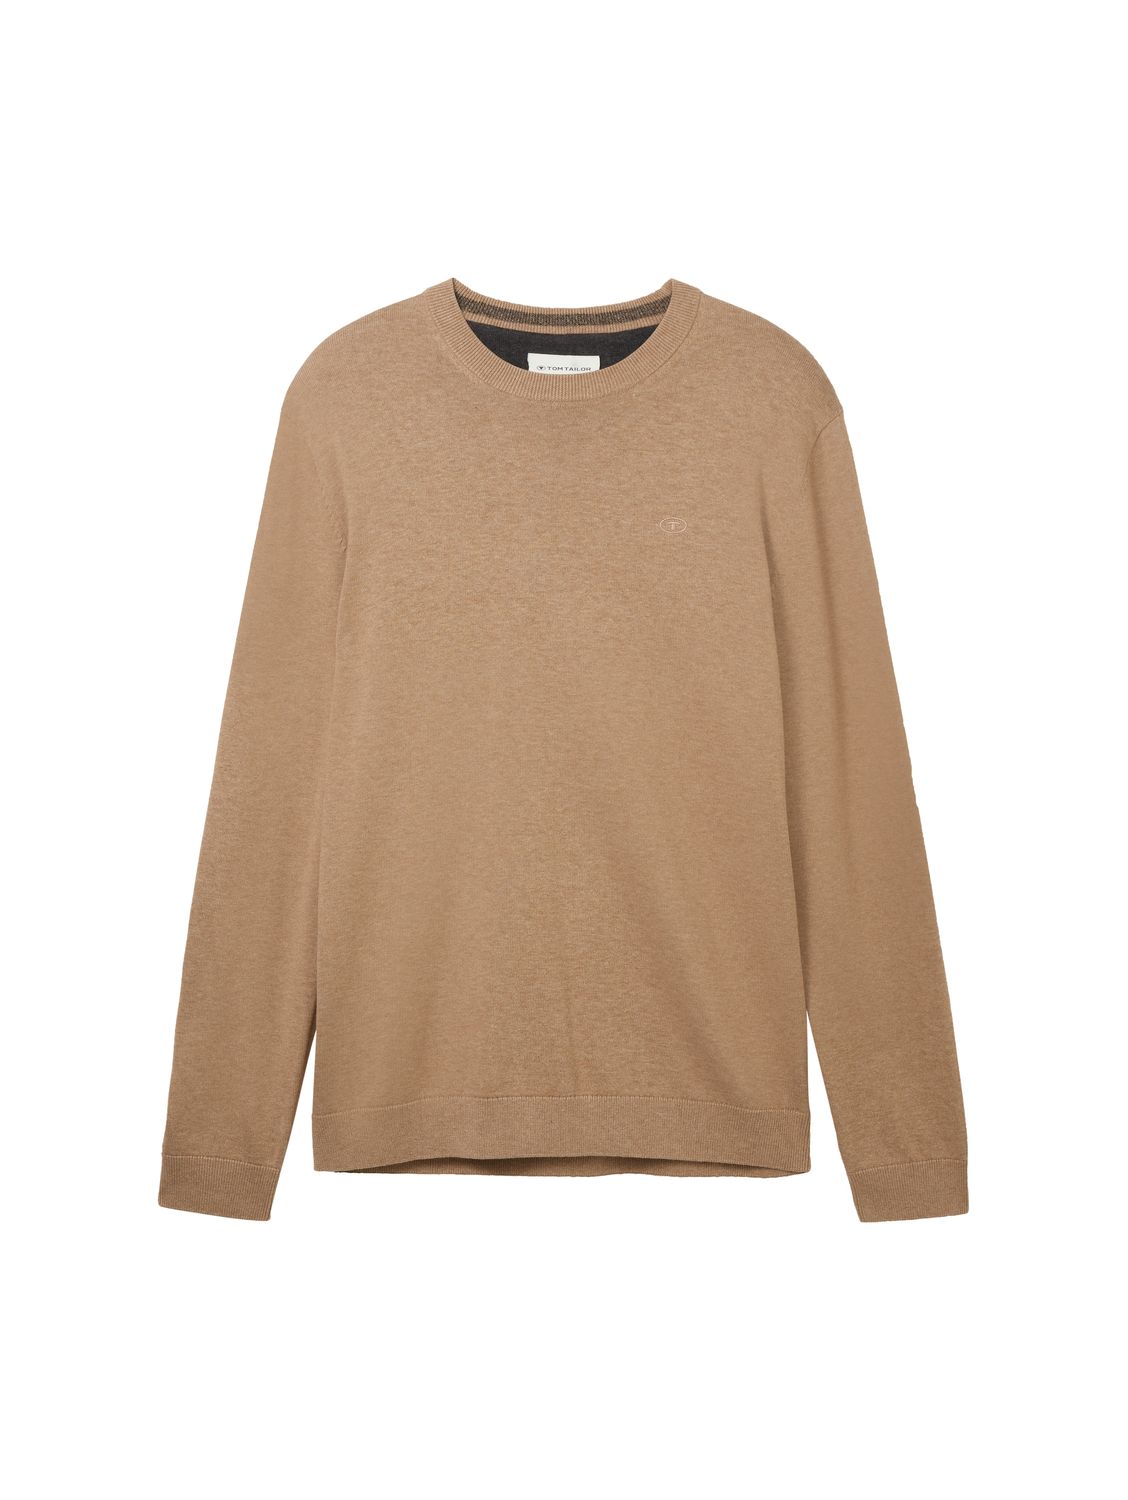 Пуловер Tom Tailor BASIC CREWNECK, коричневый